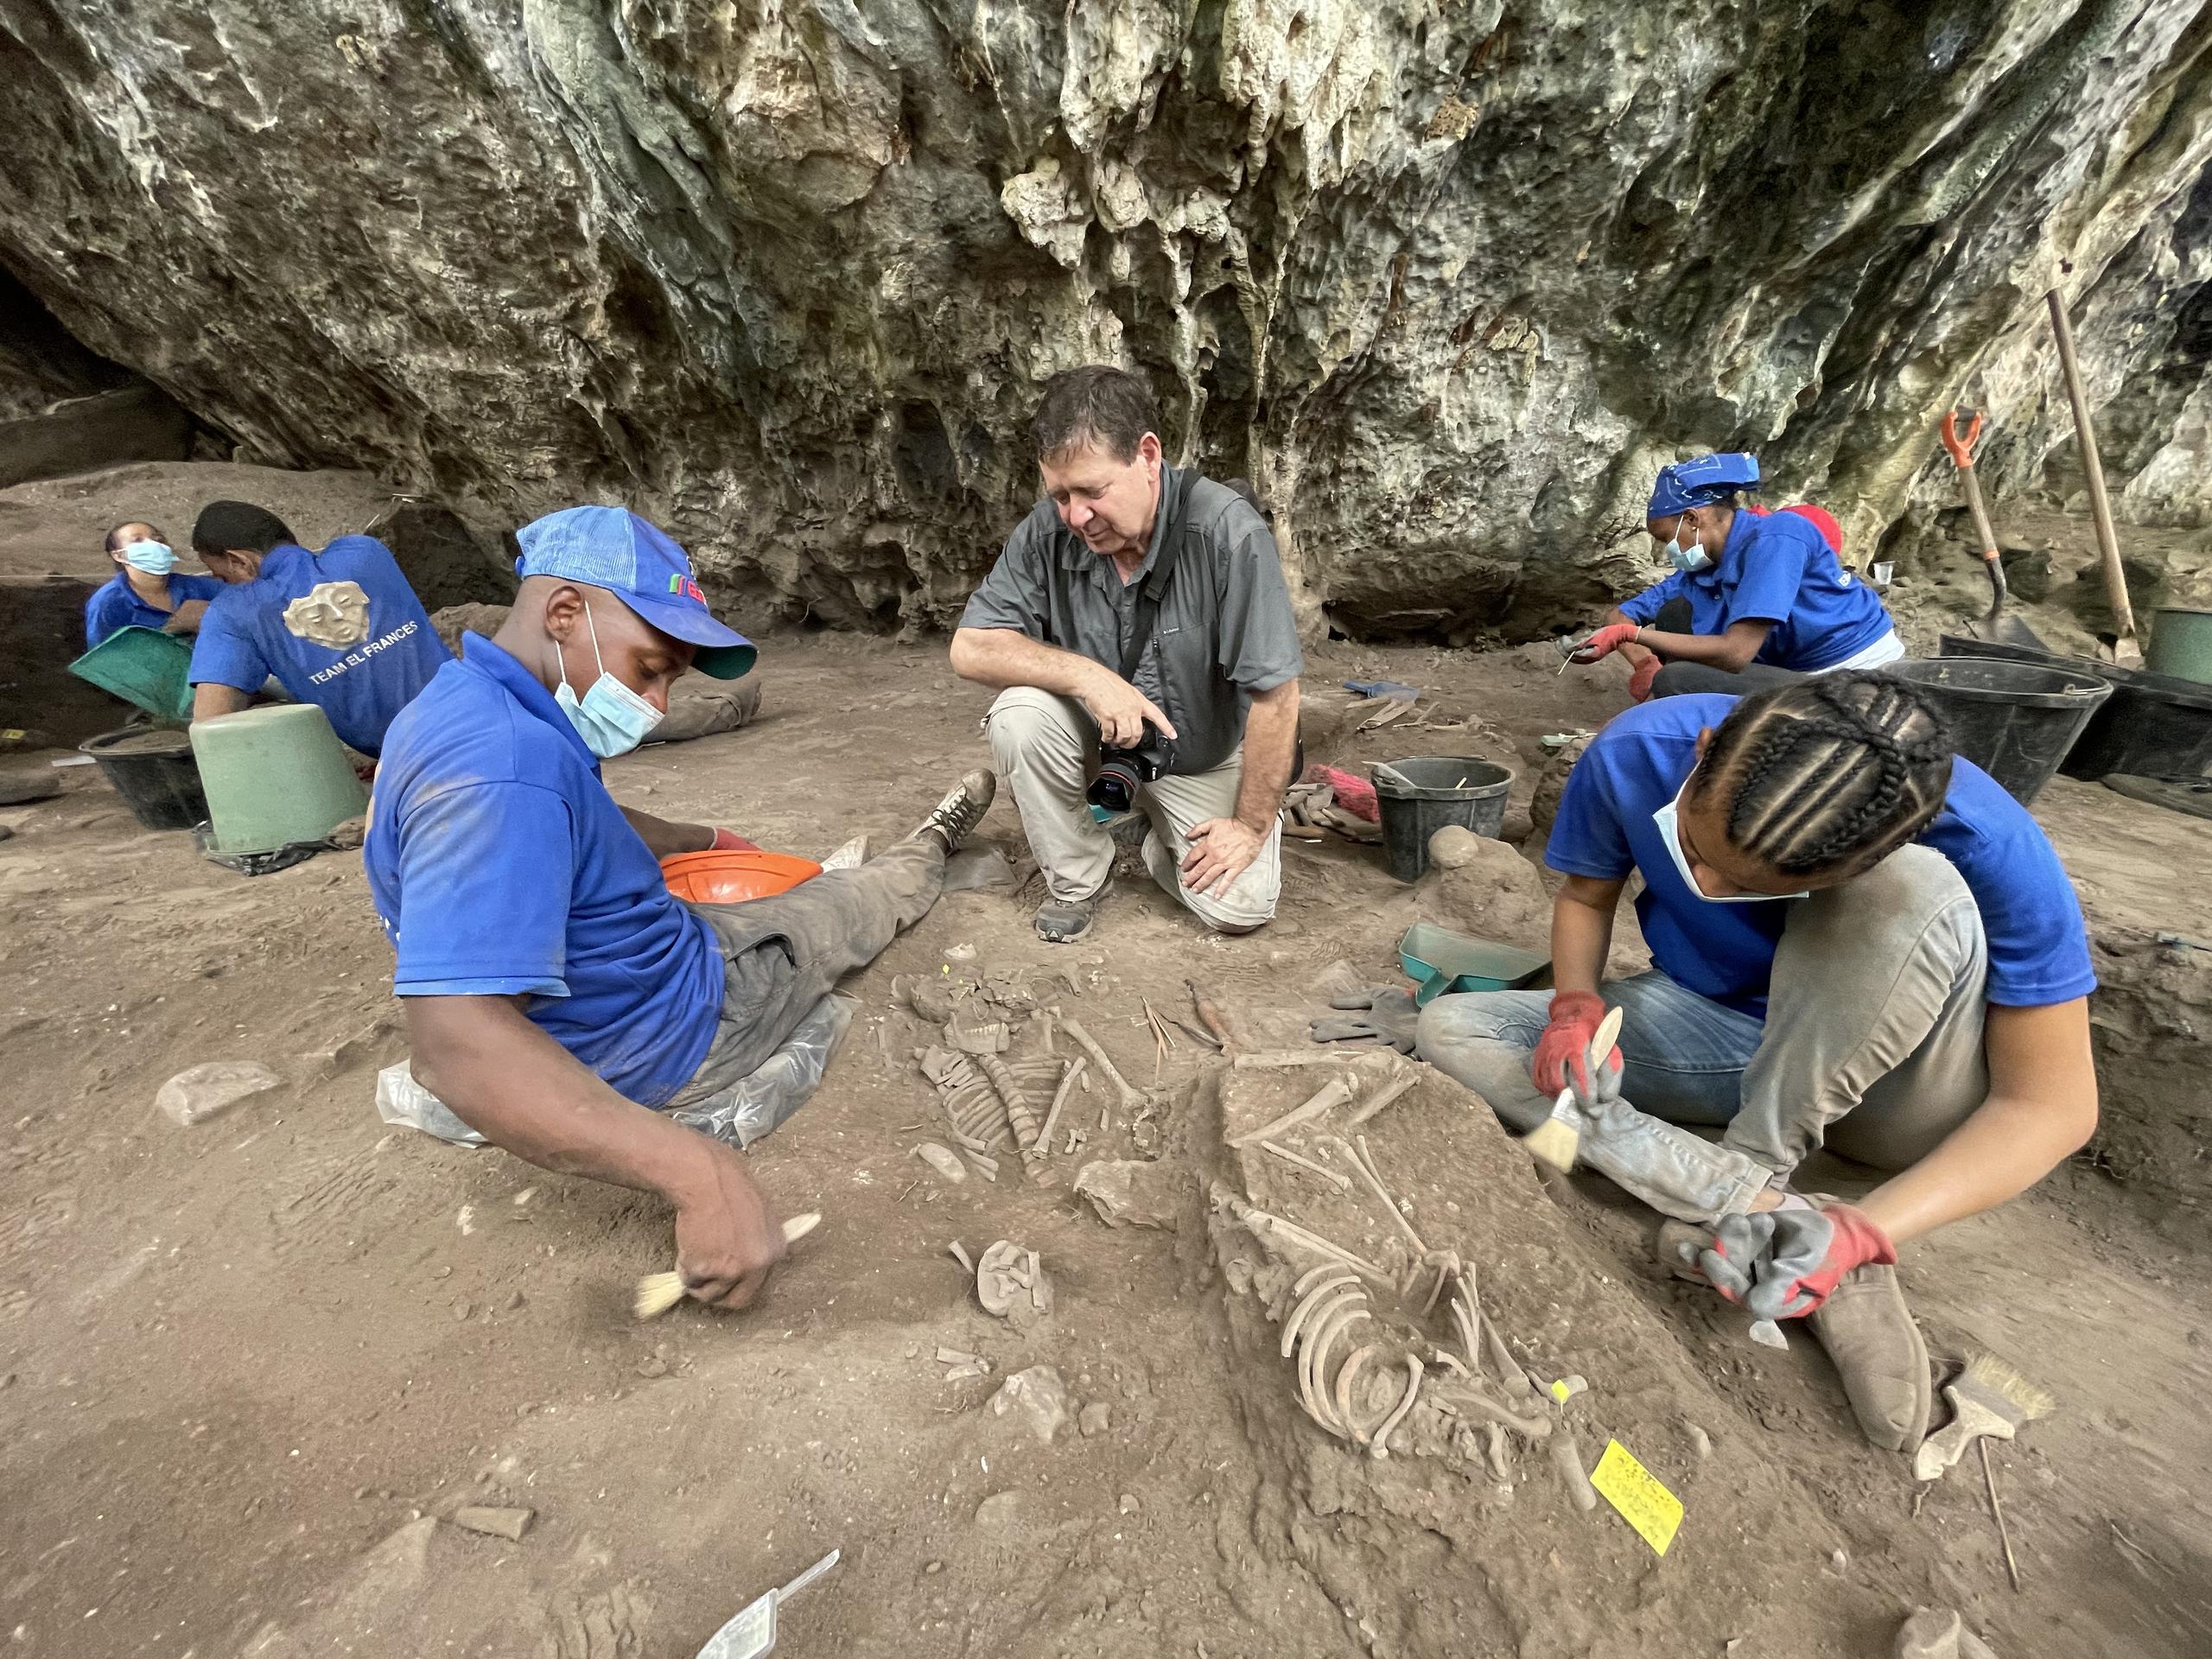 Fotografía cedida por Adolfo López donde se muestra un grupo arqueólogos trabajando en un sitio de un hallazgo arqueológico en Santo Domingo, en República Dominicana. (EFE / Adolfo López)